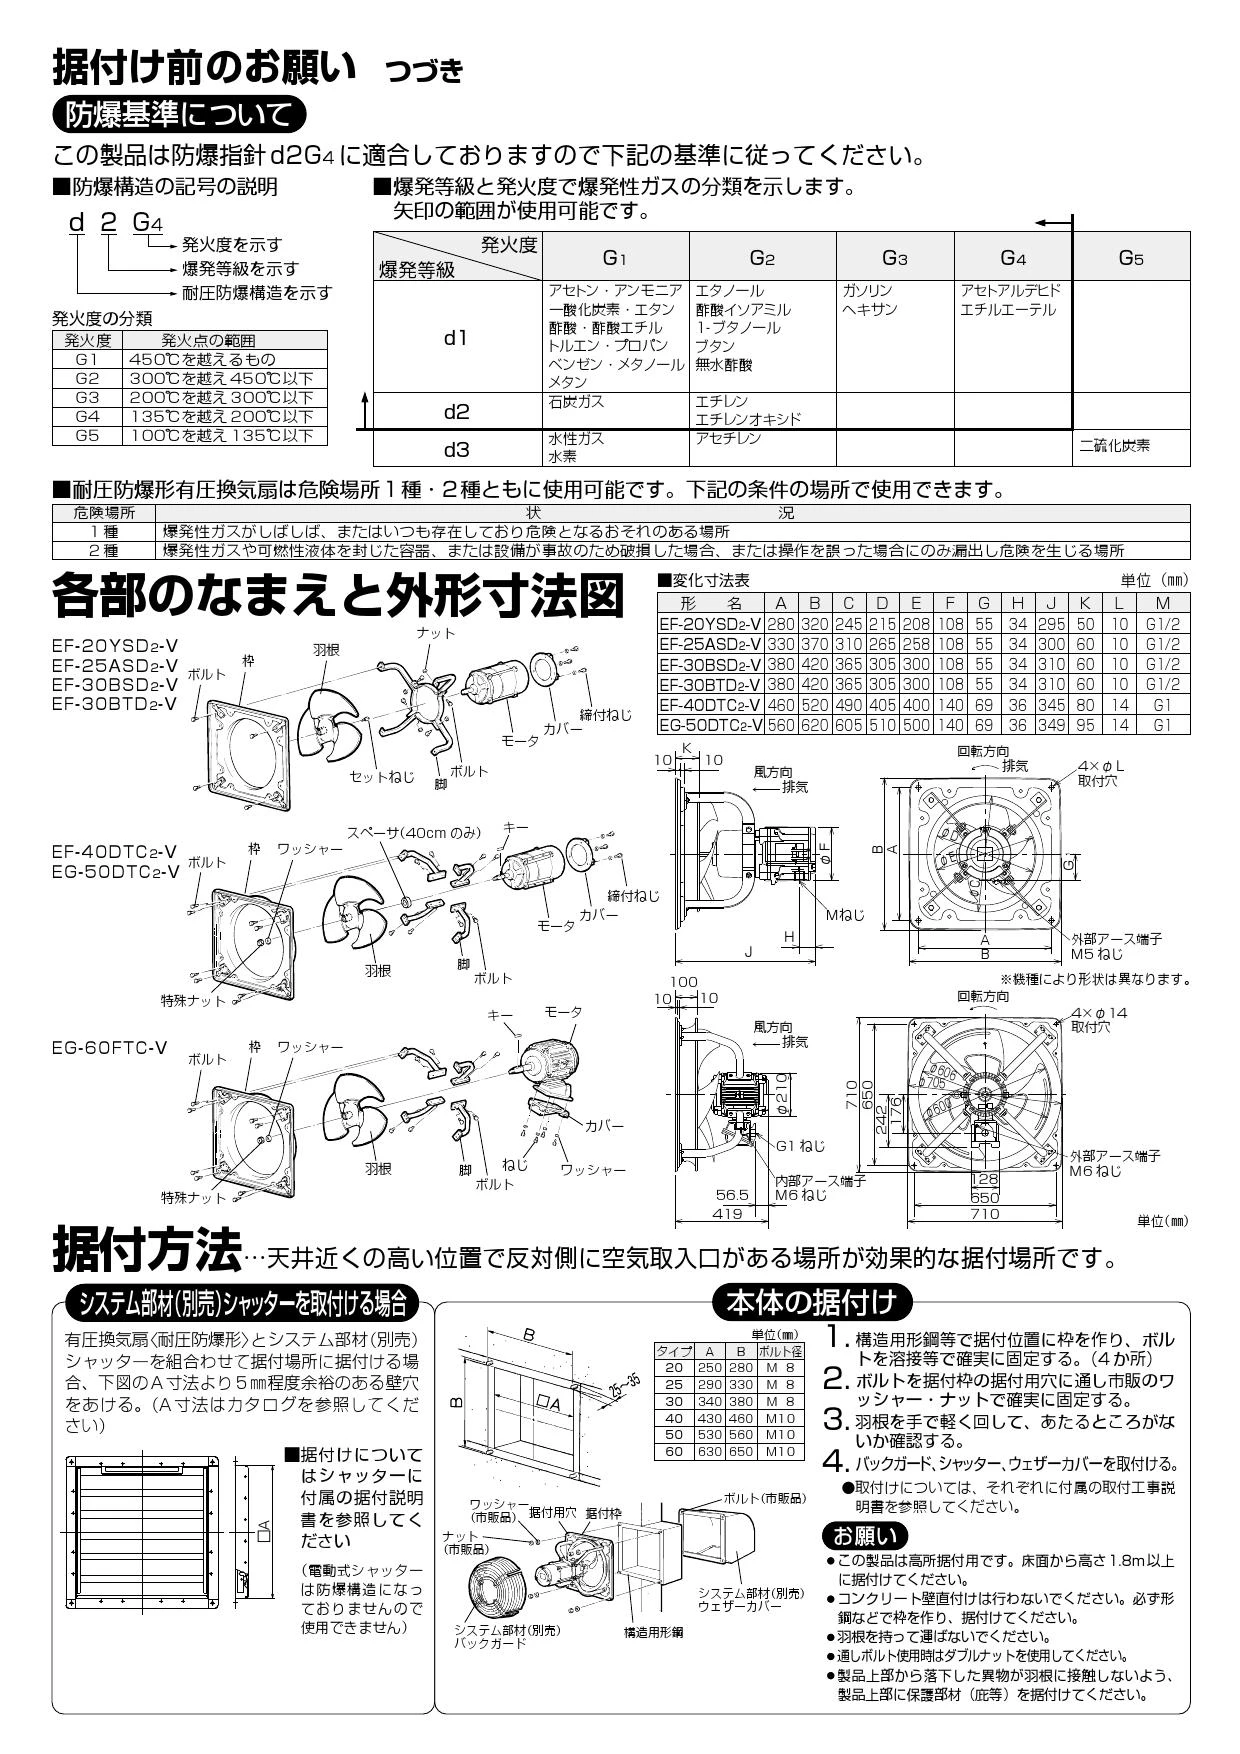 三菱電機 EF-20YSD2-V取扱説明書 納入仕様図 | 通販 プロストア ダイレクト